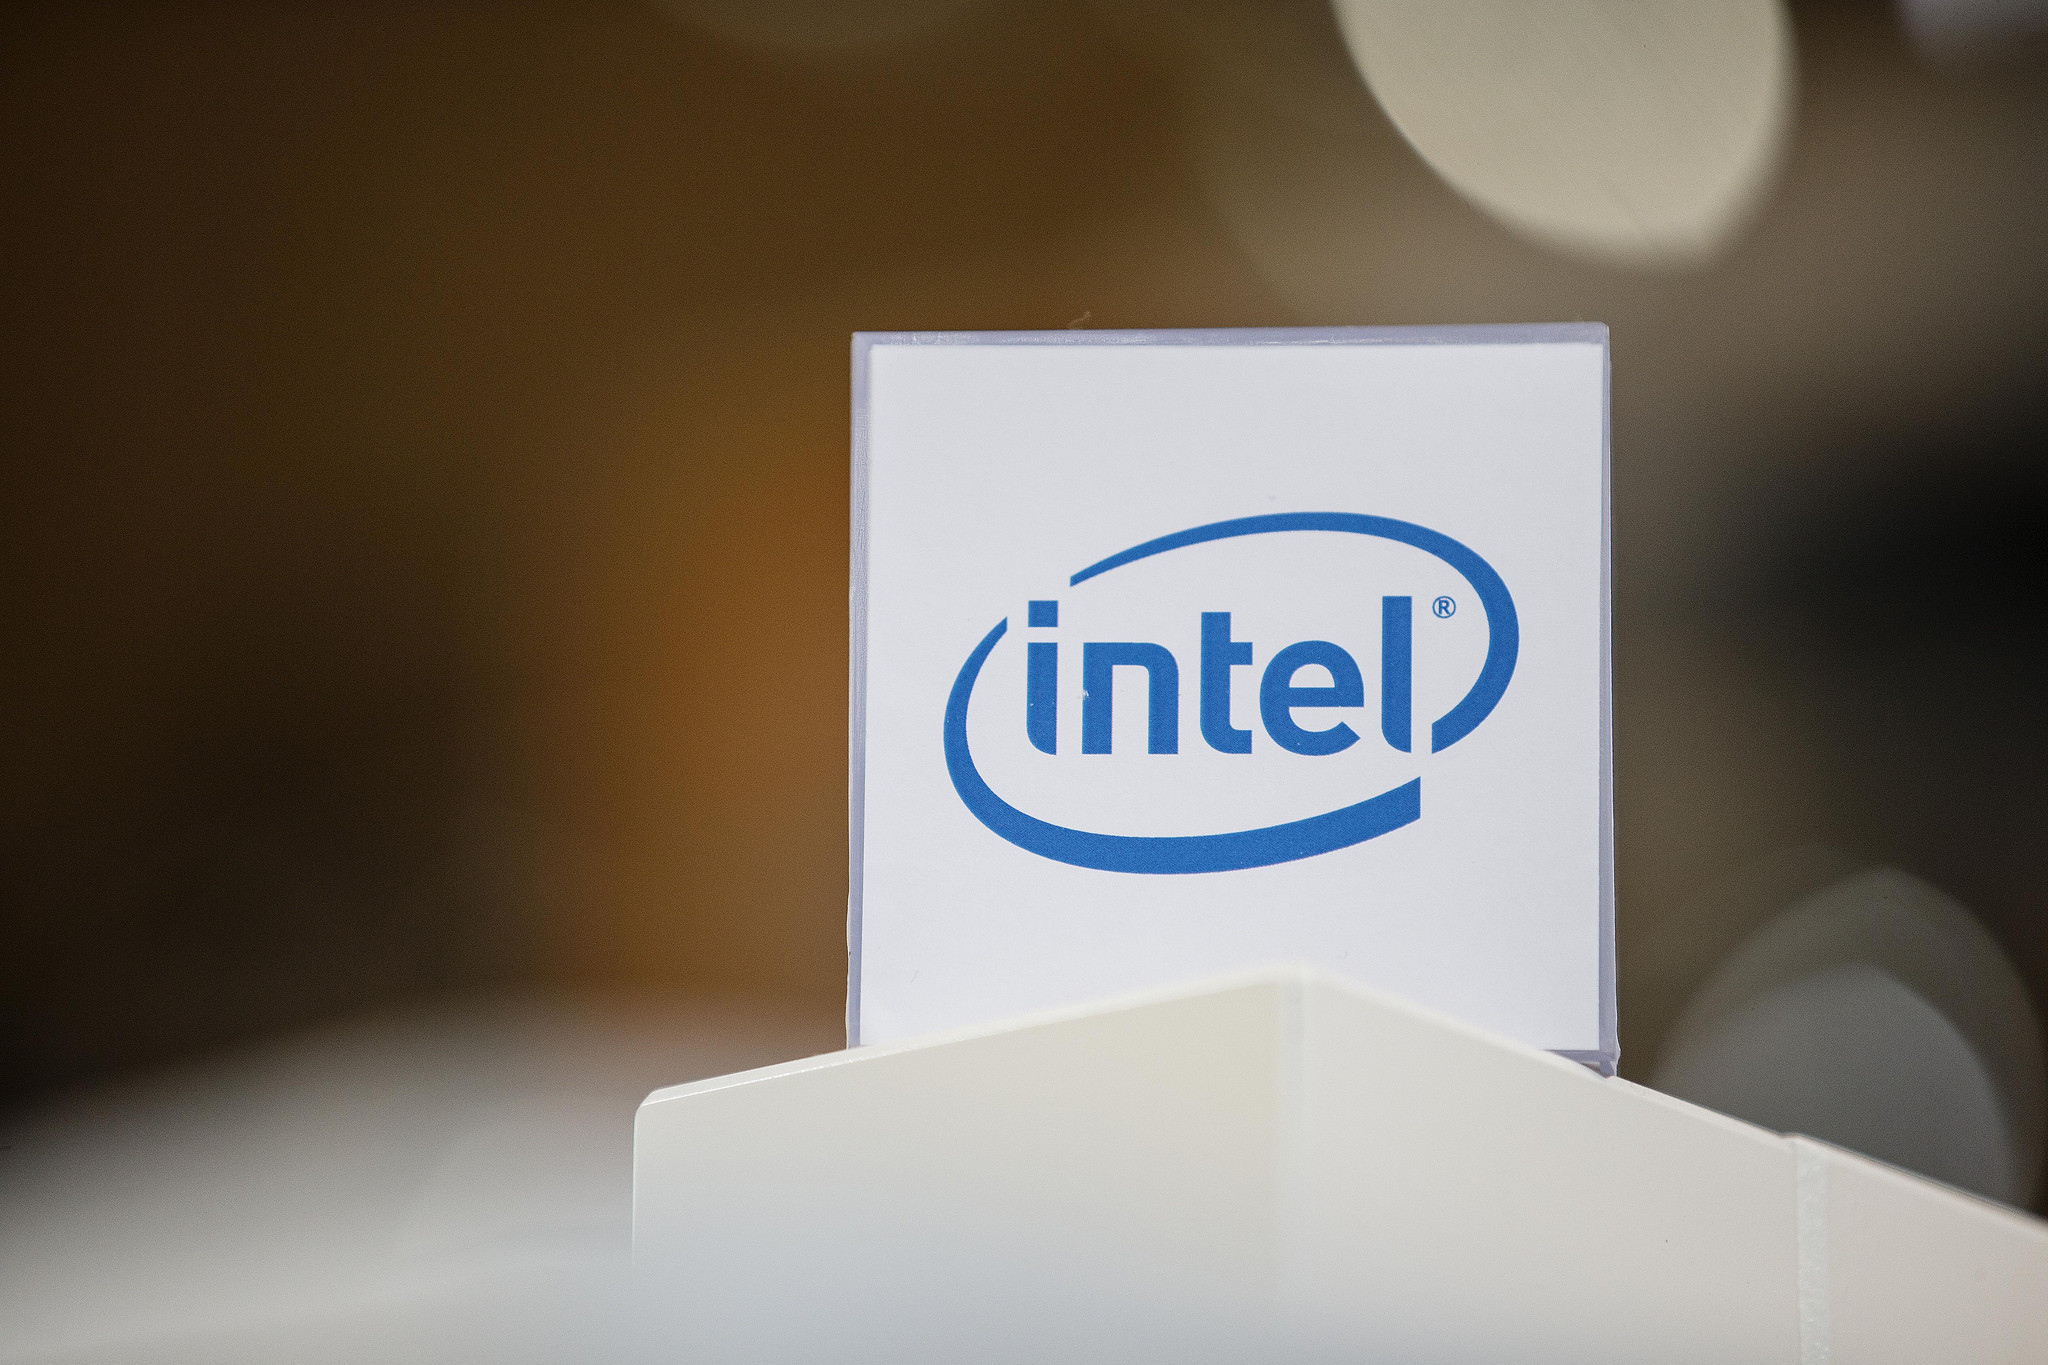 Интел обзор. Intel компания. Корпорация Intel. Intel американская компания. Intel история компании.